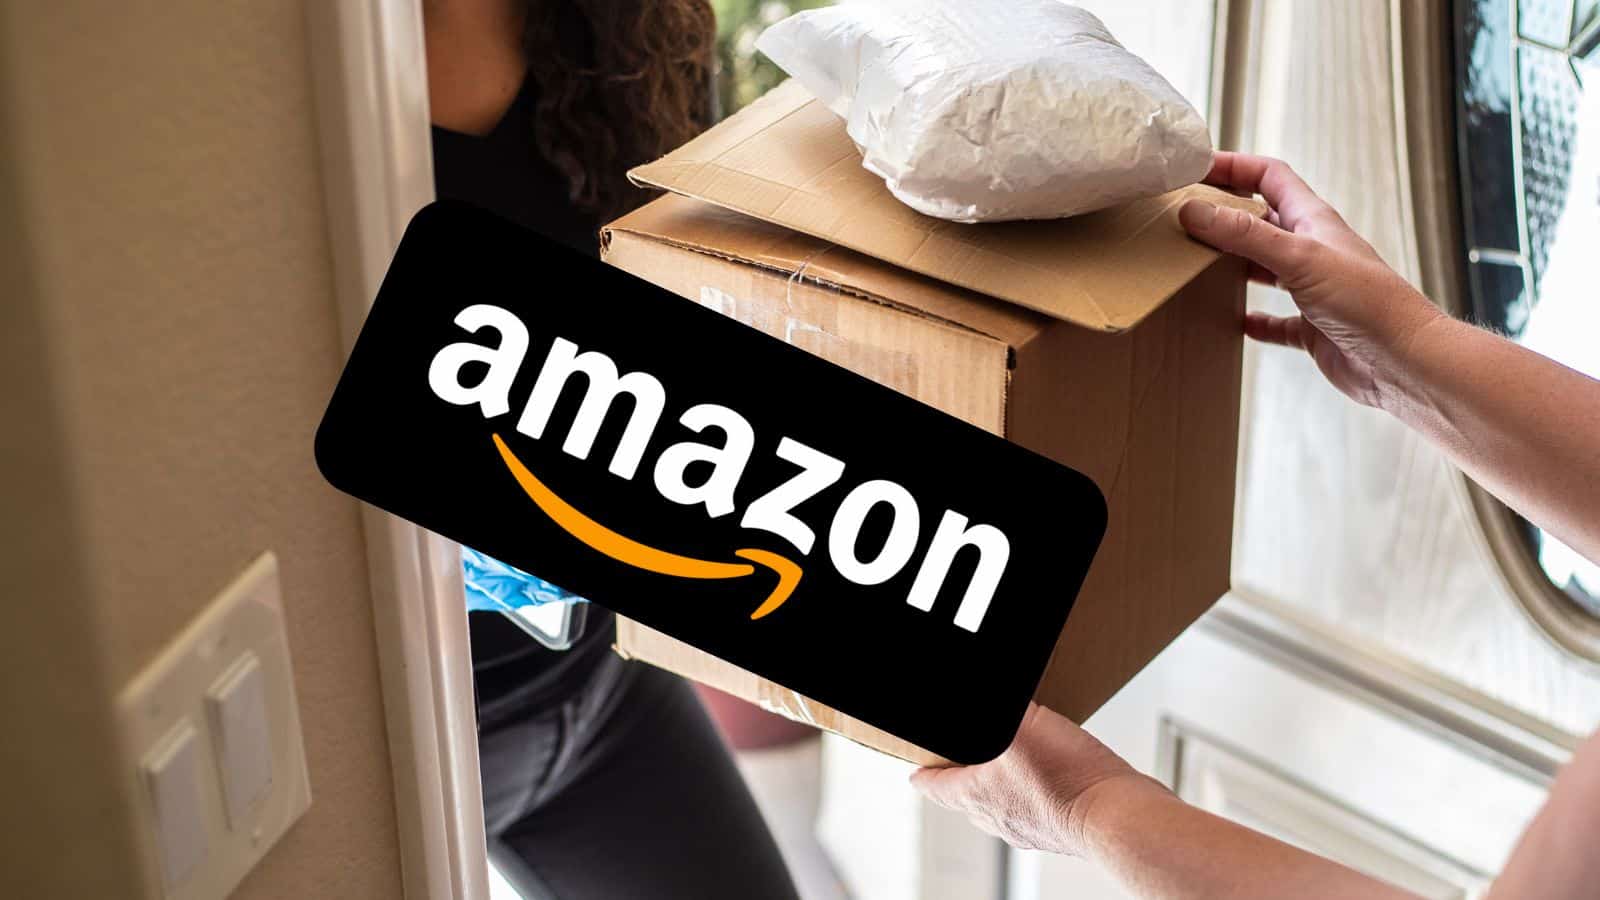 Amazon: le migliori OFFERTE segrete con prezzi quasi GRATIS